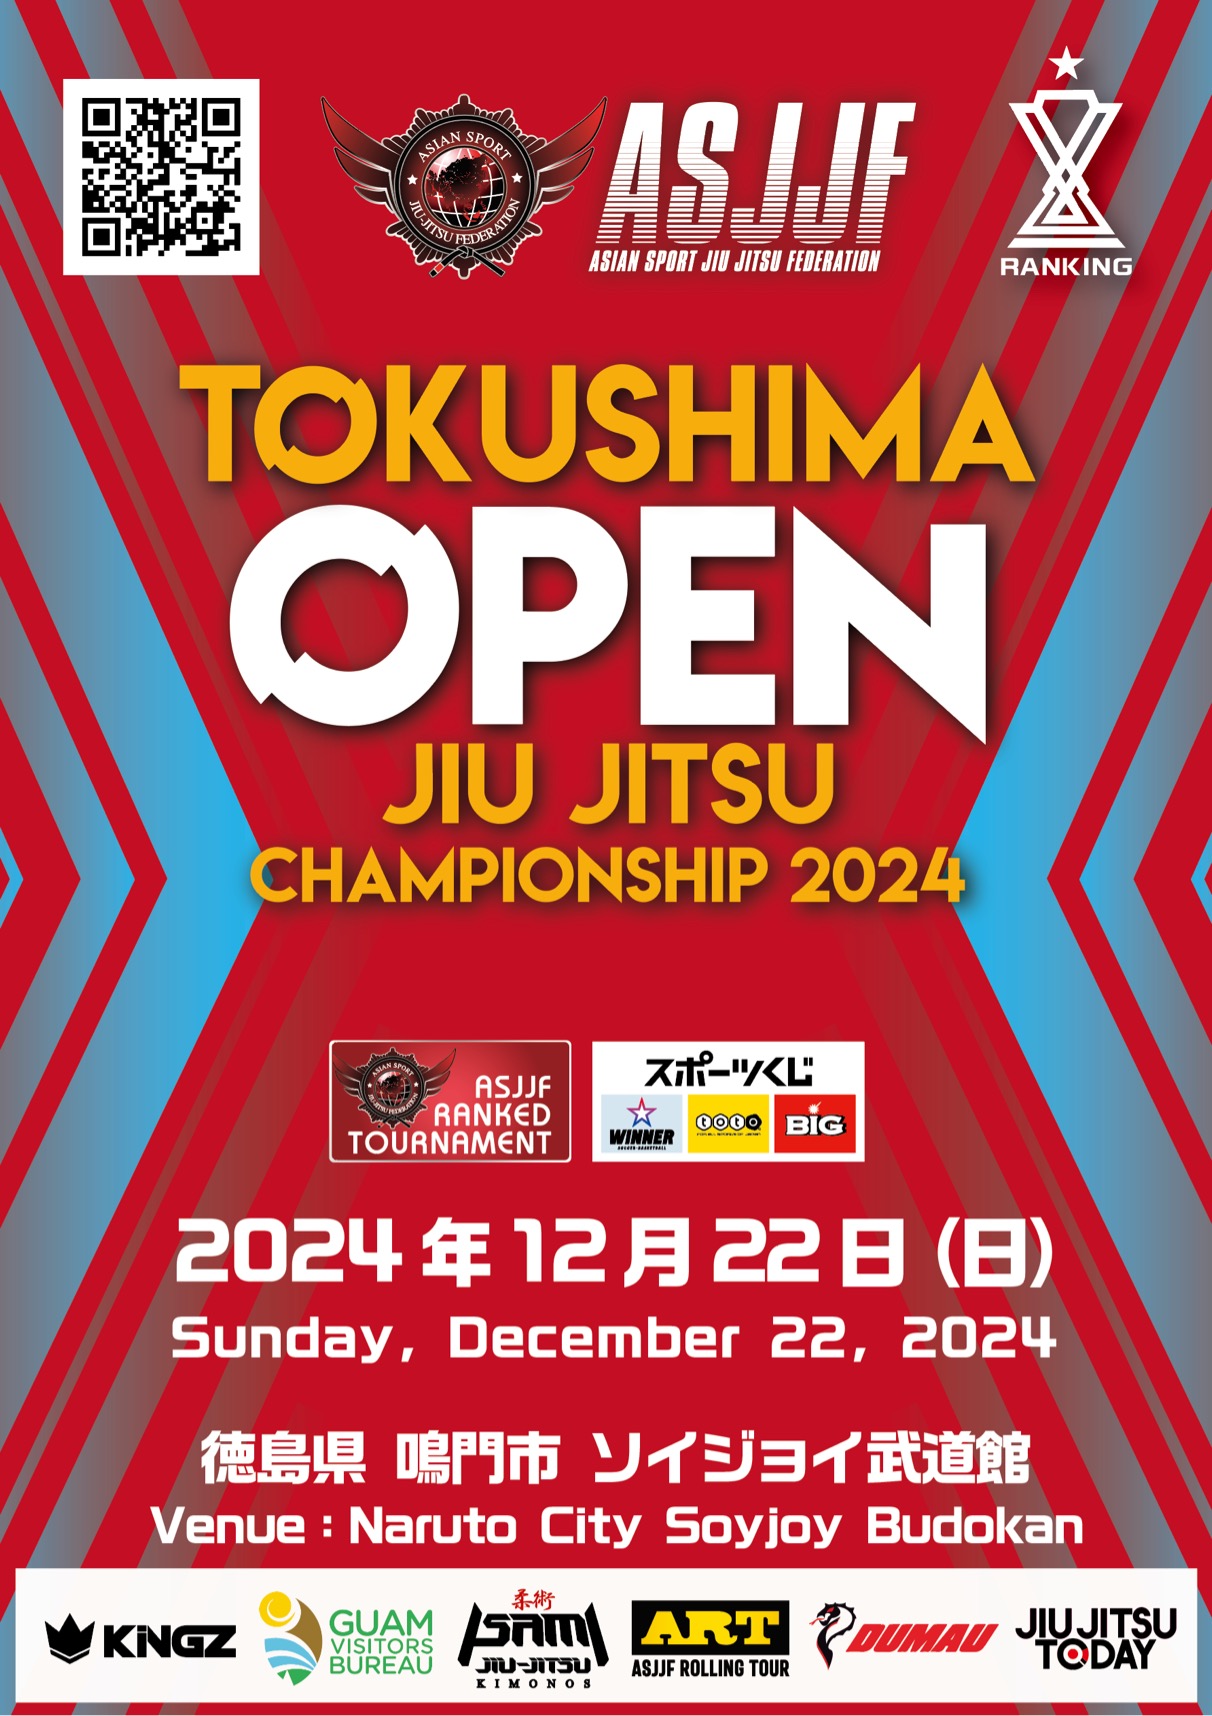 tokushima open jiu jitsu championship 2024